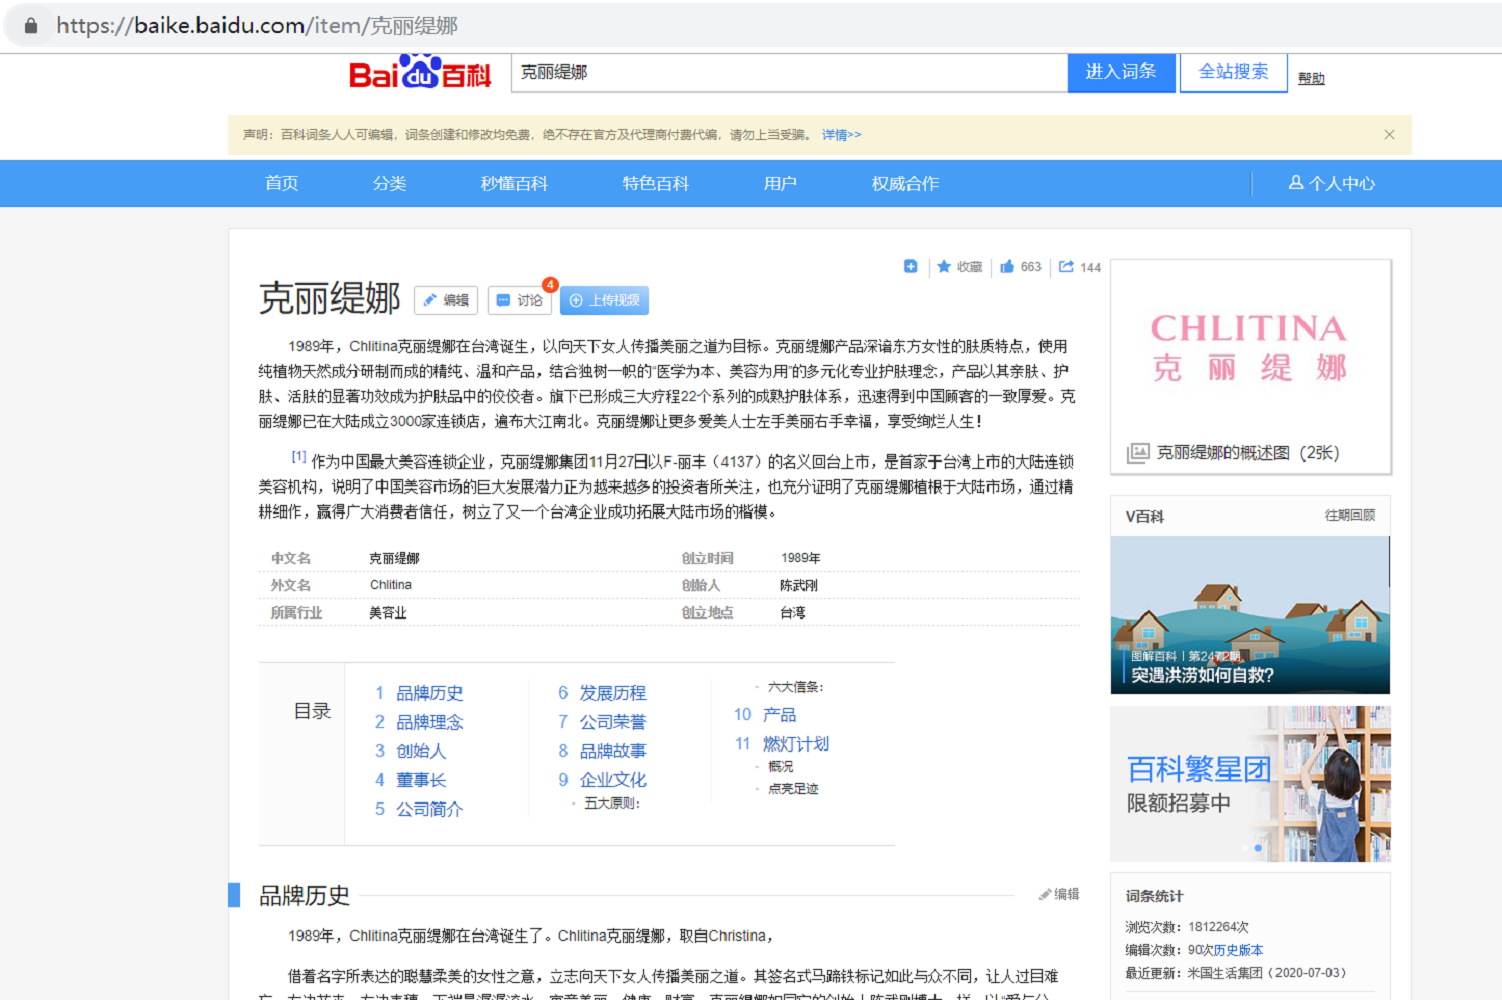 Brand Encyclopedia - Critina - Baidu Encyclopedia Encyclopedia